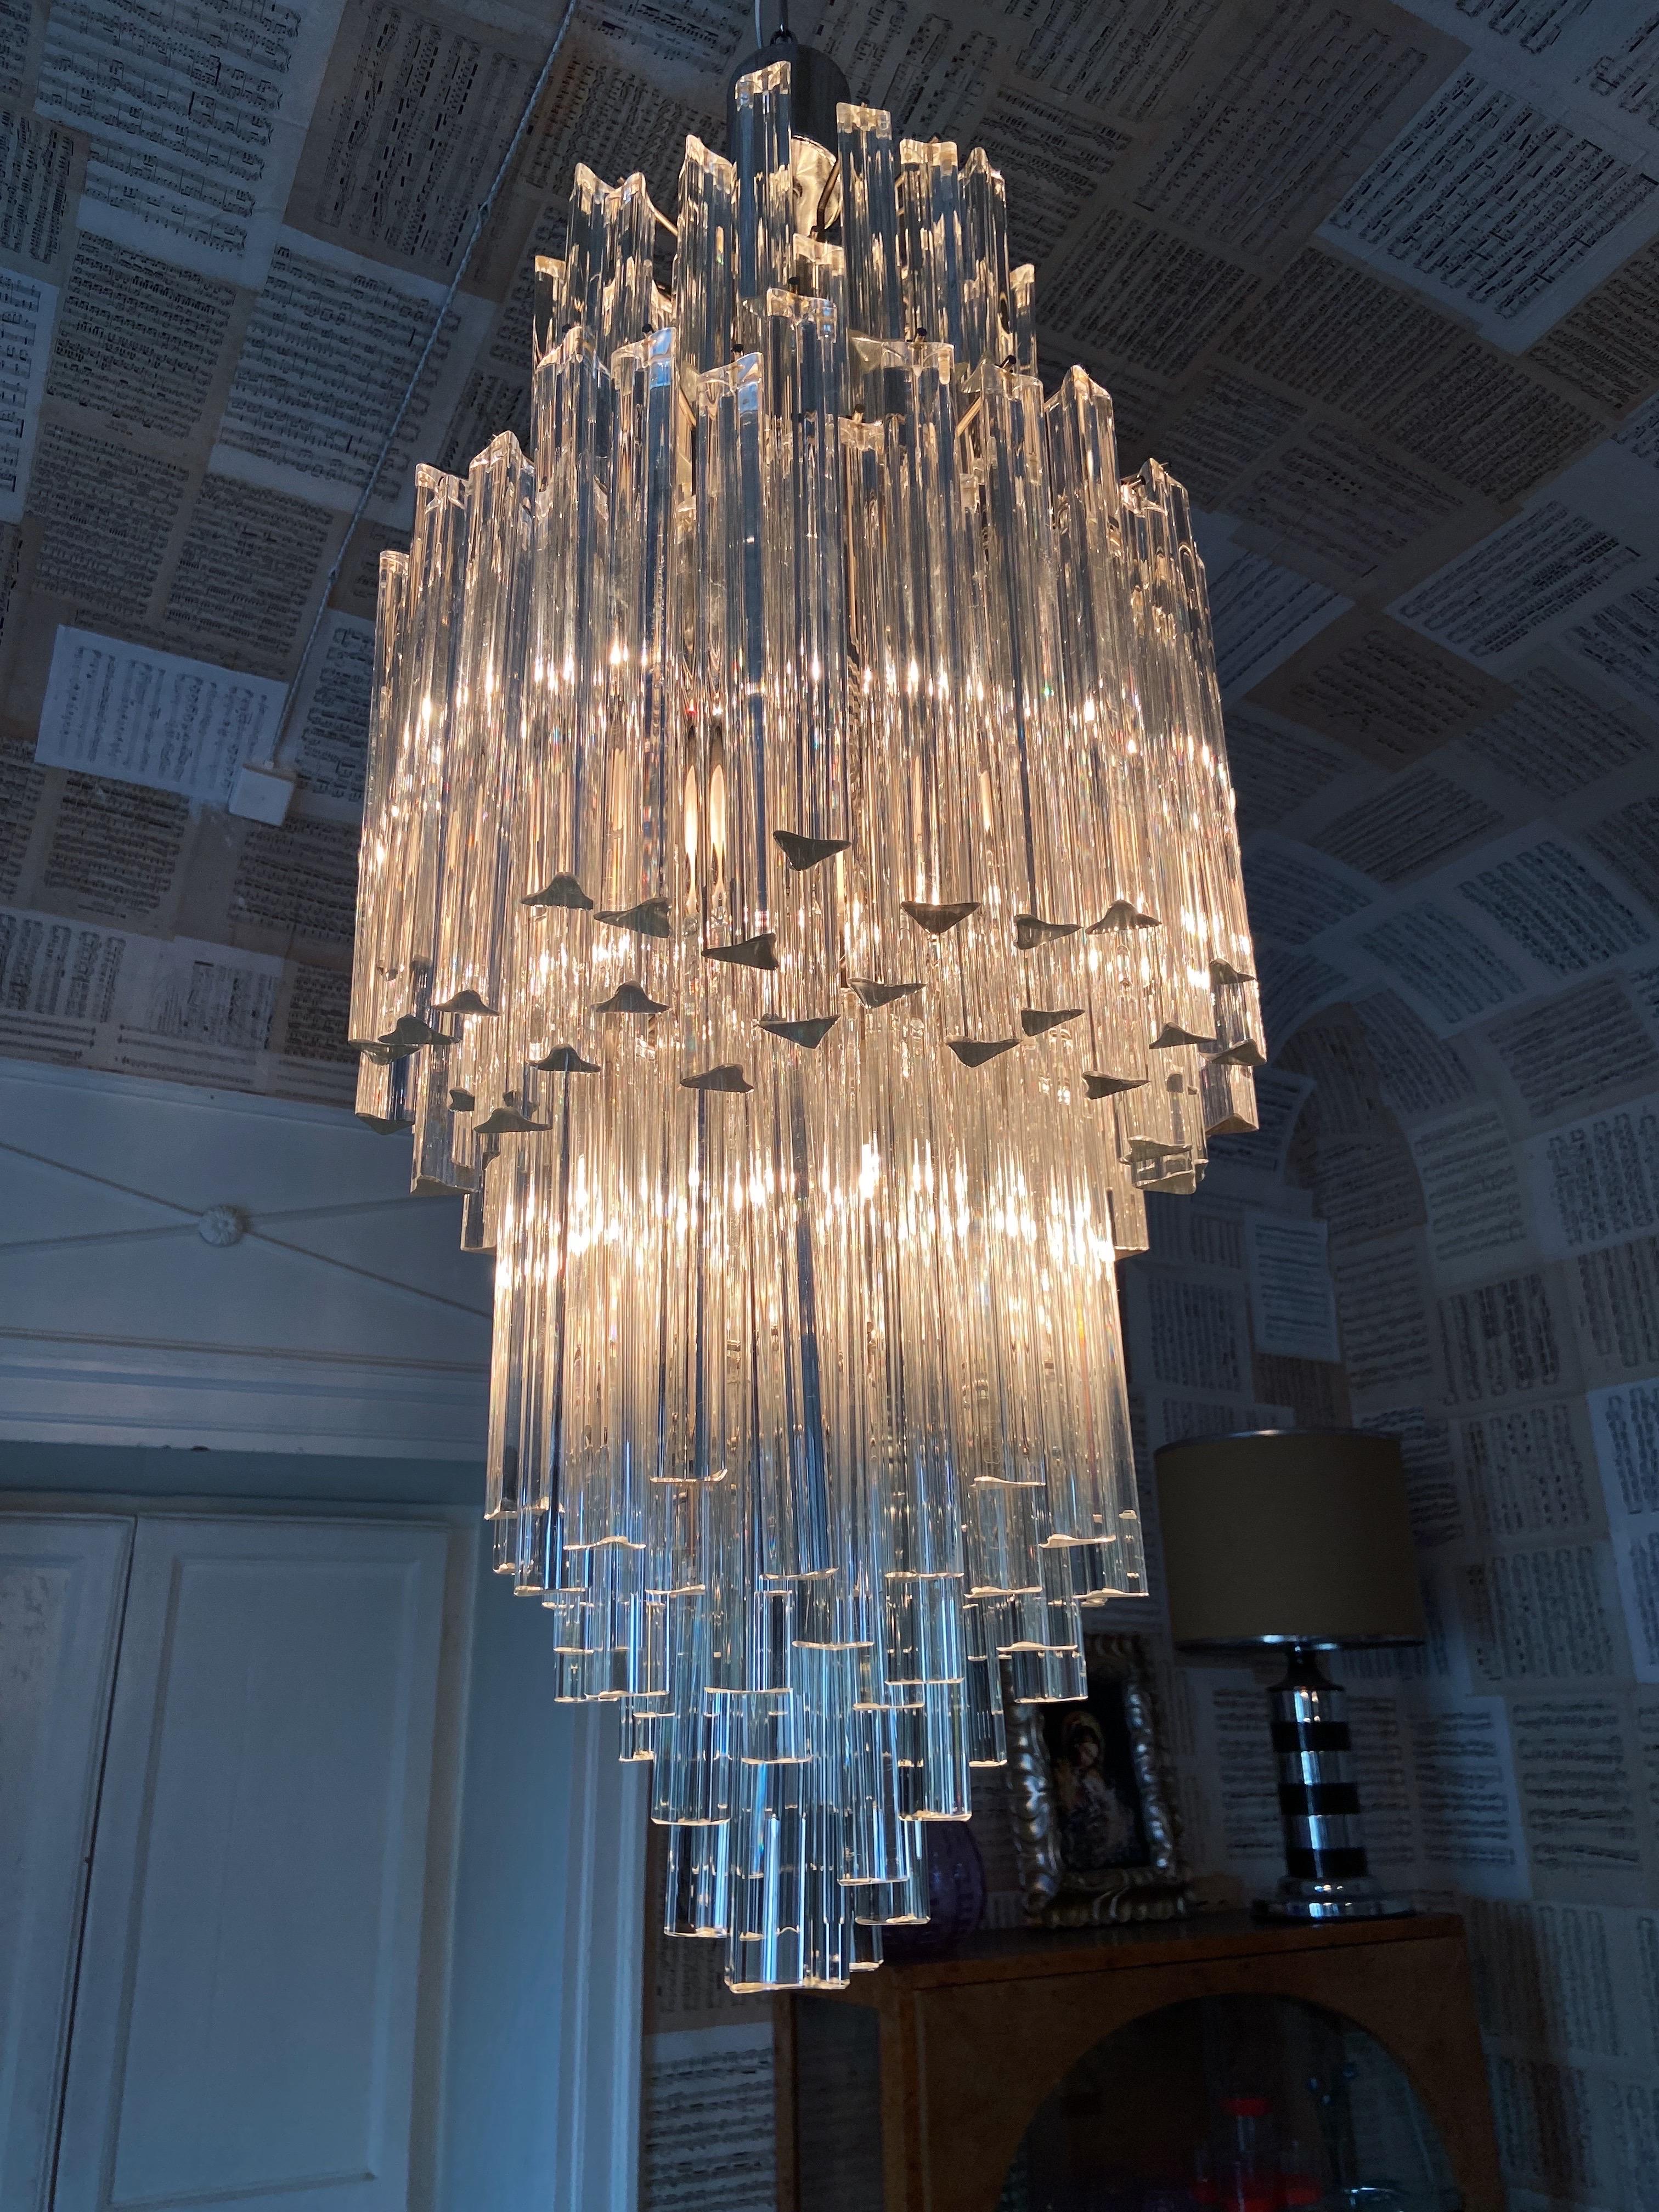 Venini XL-Kronleuchter aus der Mitte des Jahrhunderts. Die Leuchte besteht aus 162 originalen Murano-Glaskristallen auf einem Metallsockel, der aus 3 Etagen besteht. Ein wahres Juwel für Ihr Zuhause.

Einzelheiten
Schöpfer: Venini,